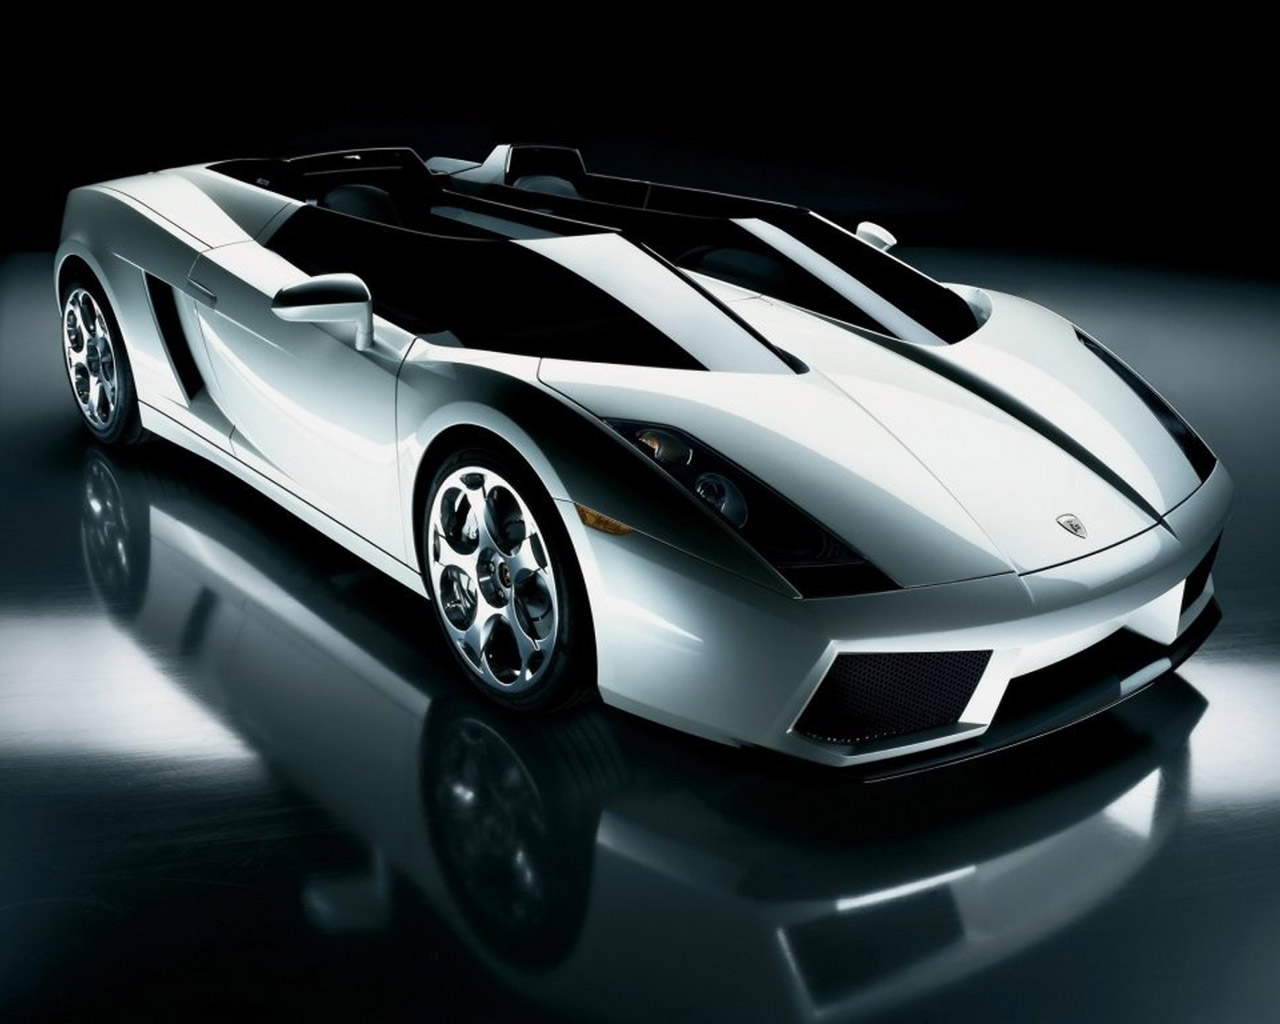 Télécharger des fonds d'écran Lamborghini Concept S HD